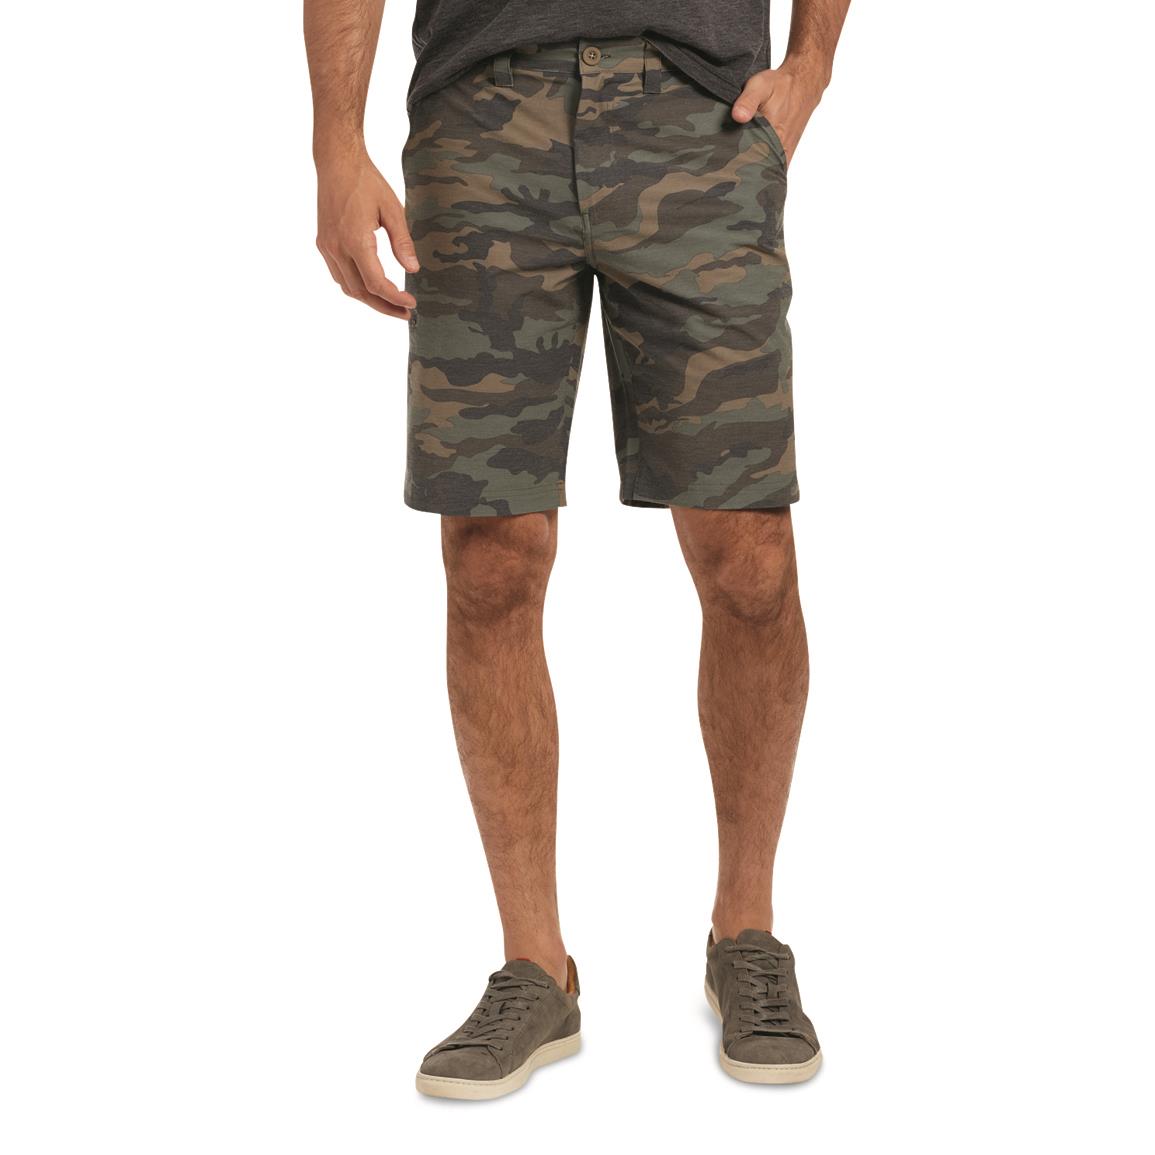 Flag & Anthem Men's MadeFlex Any-Wear Hybrid Shorts, Olive Camo